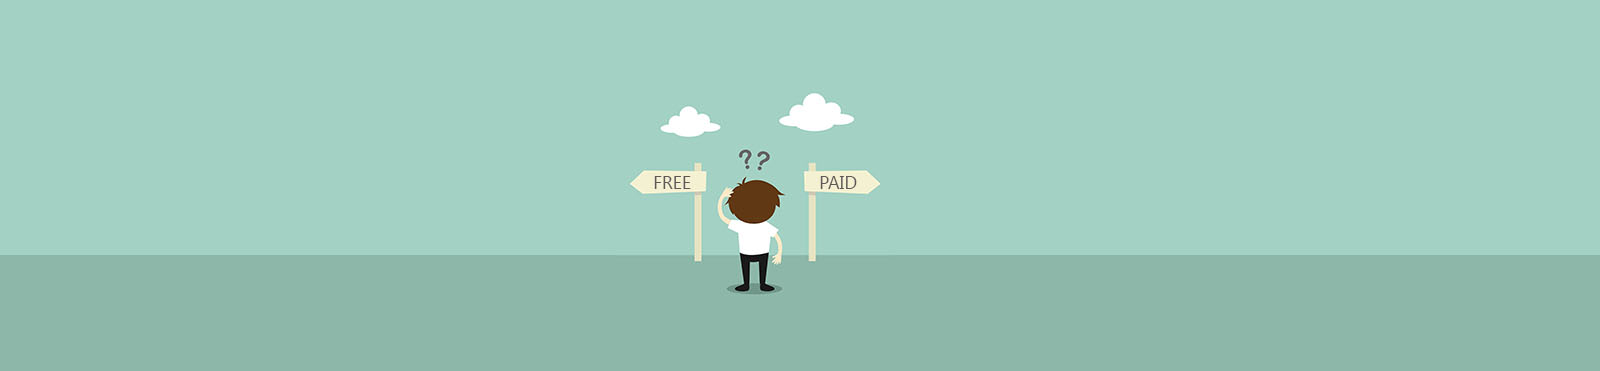 free vs paid antivirus